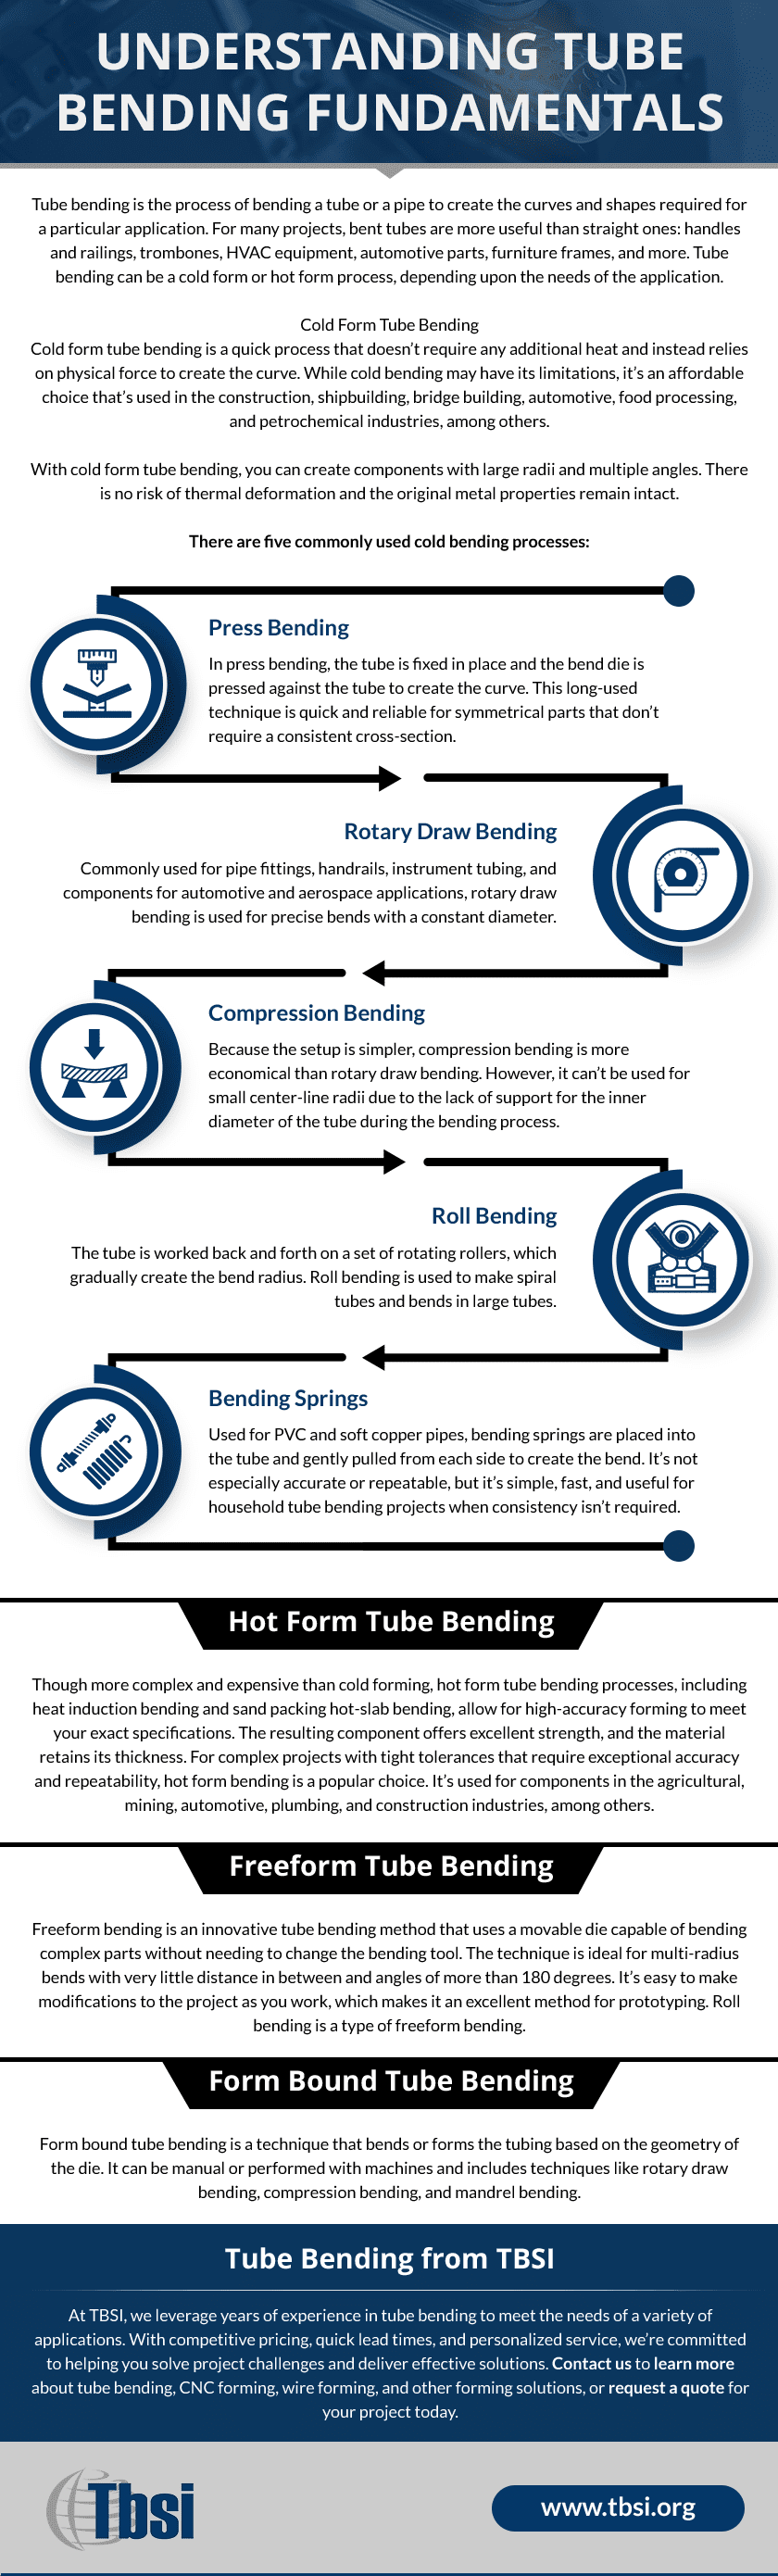 Understanding Tube Bending Fundamentals